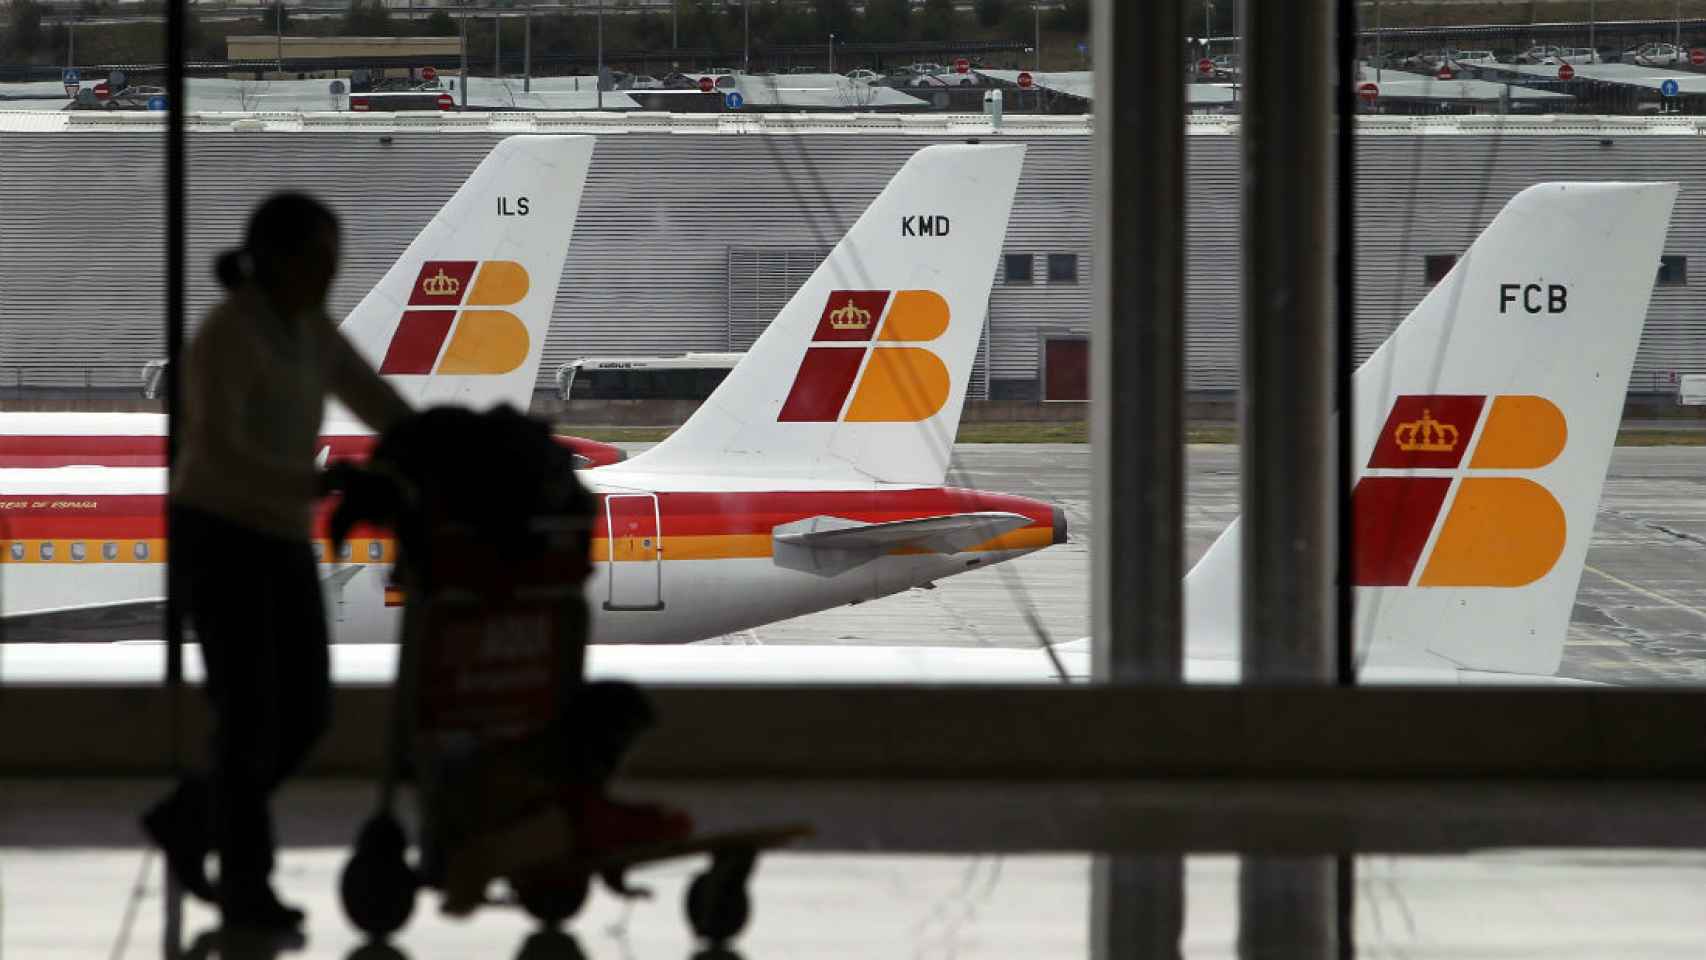 Un pasajero lleva su equipaje ante una hilera de aviones.